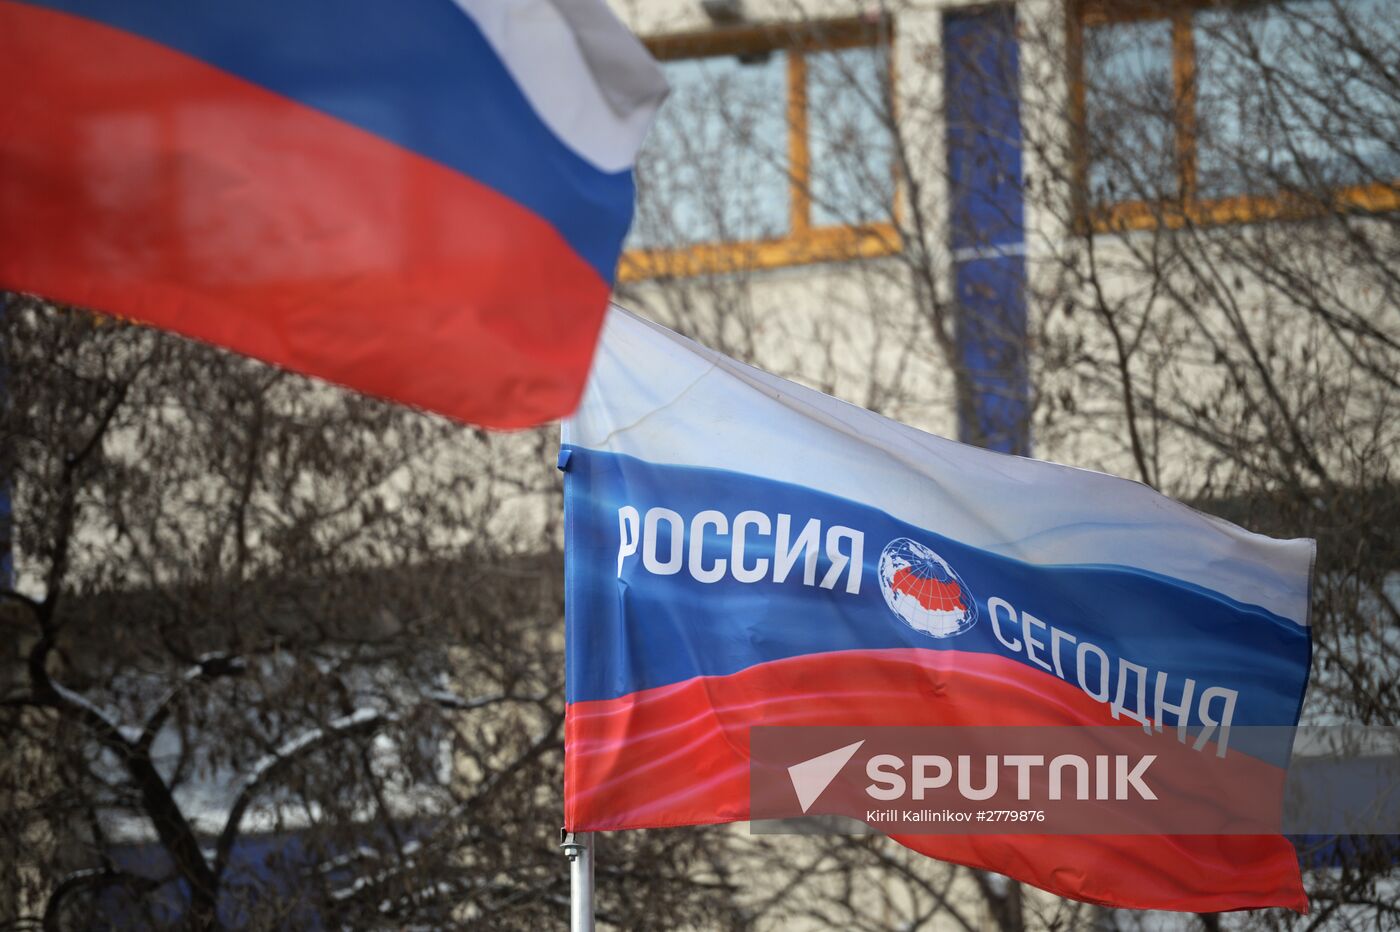 Russian flag with logotype of International information agency "Rossiya Segodnya"